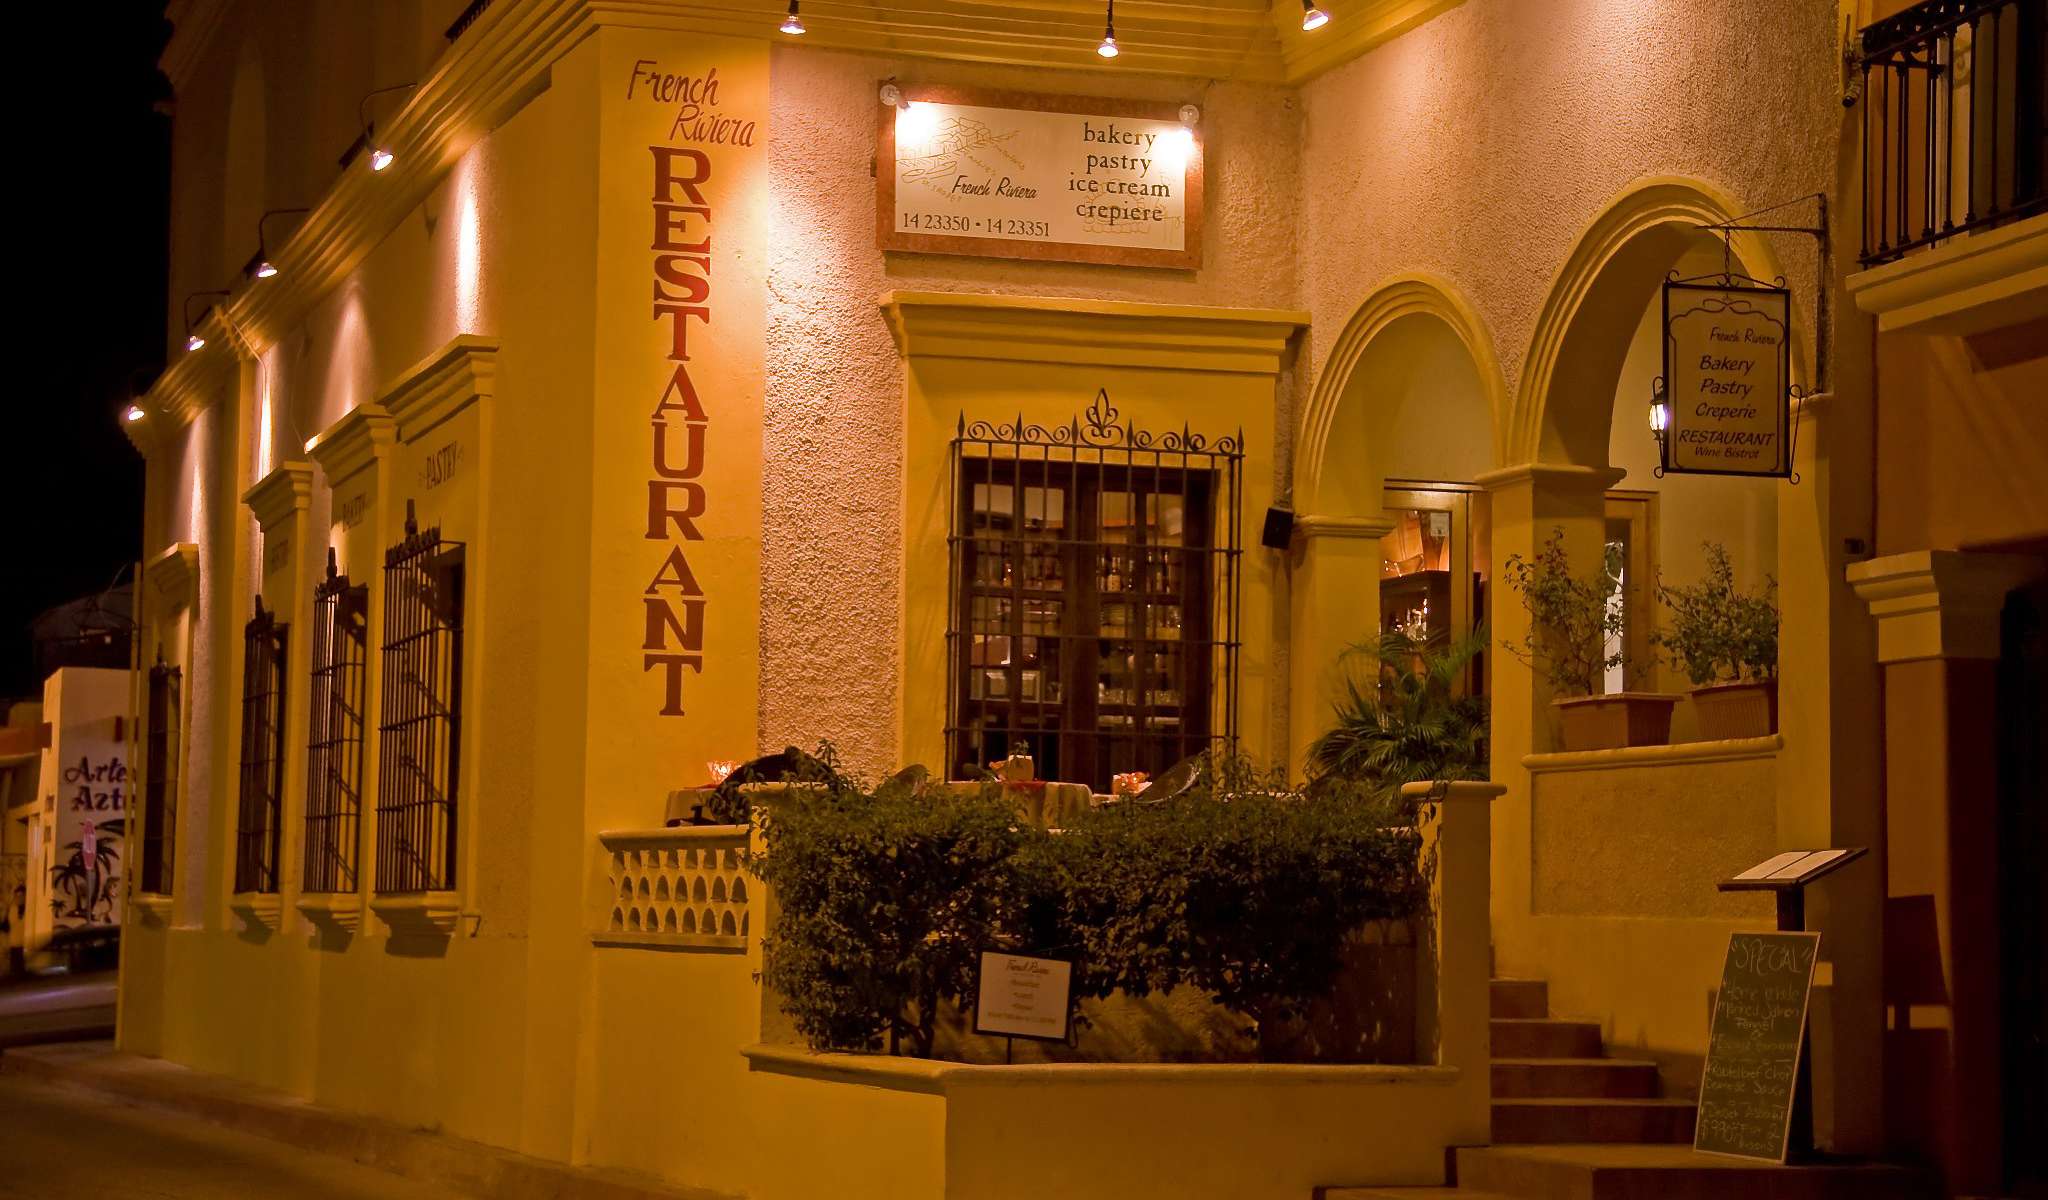 French Riviera Restaurant